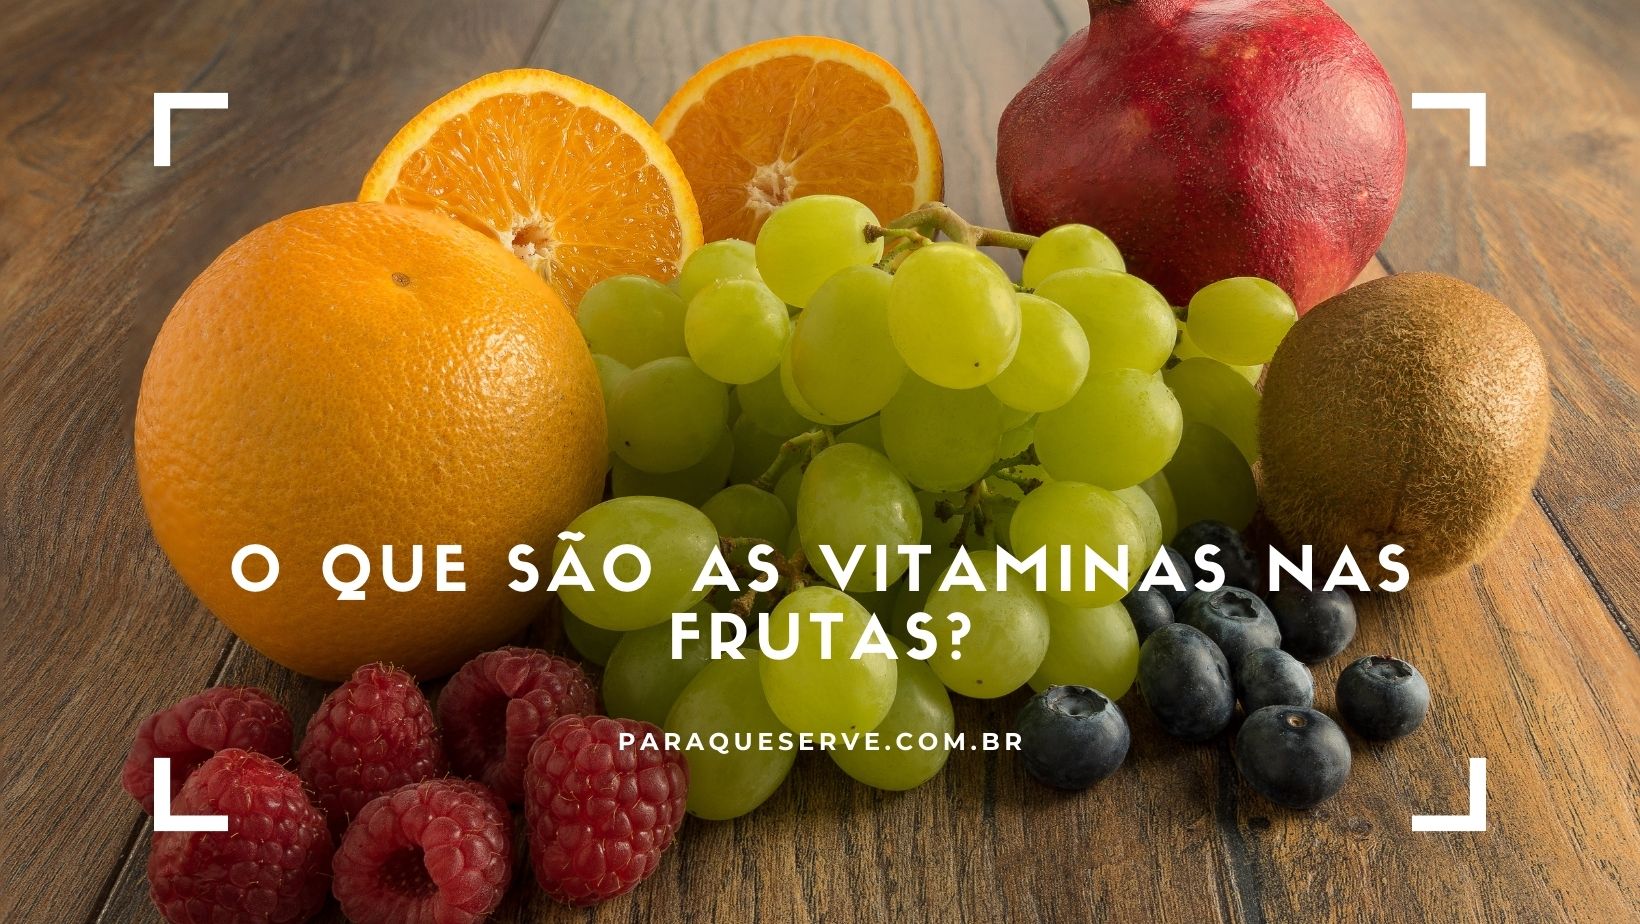 O que são as vitaminas nas frutas?